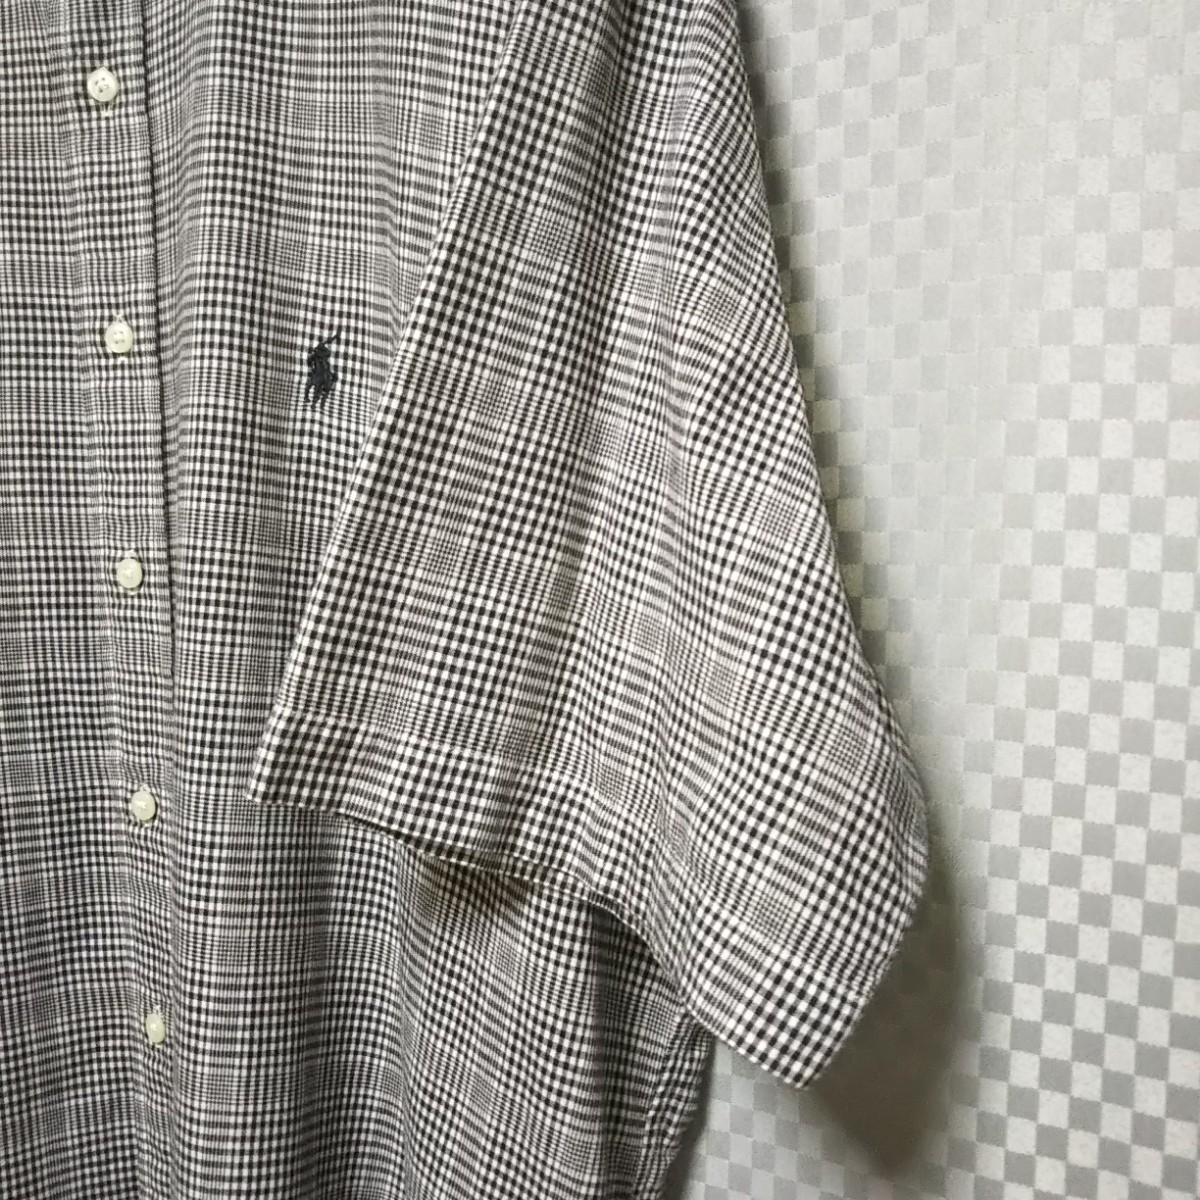 ラルフローレン☆ハーフボタンダウンシャツ 半袖 チェック柄 3XL 黒×白